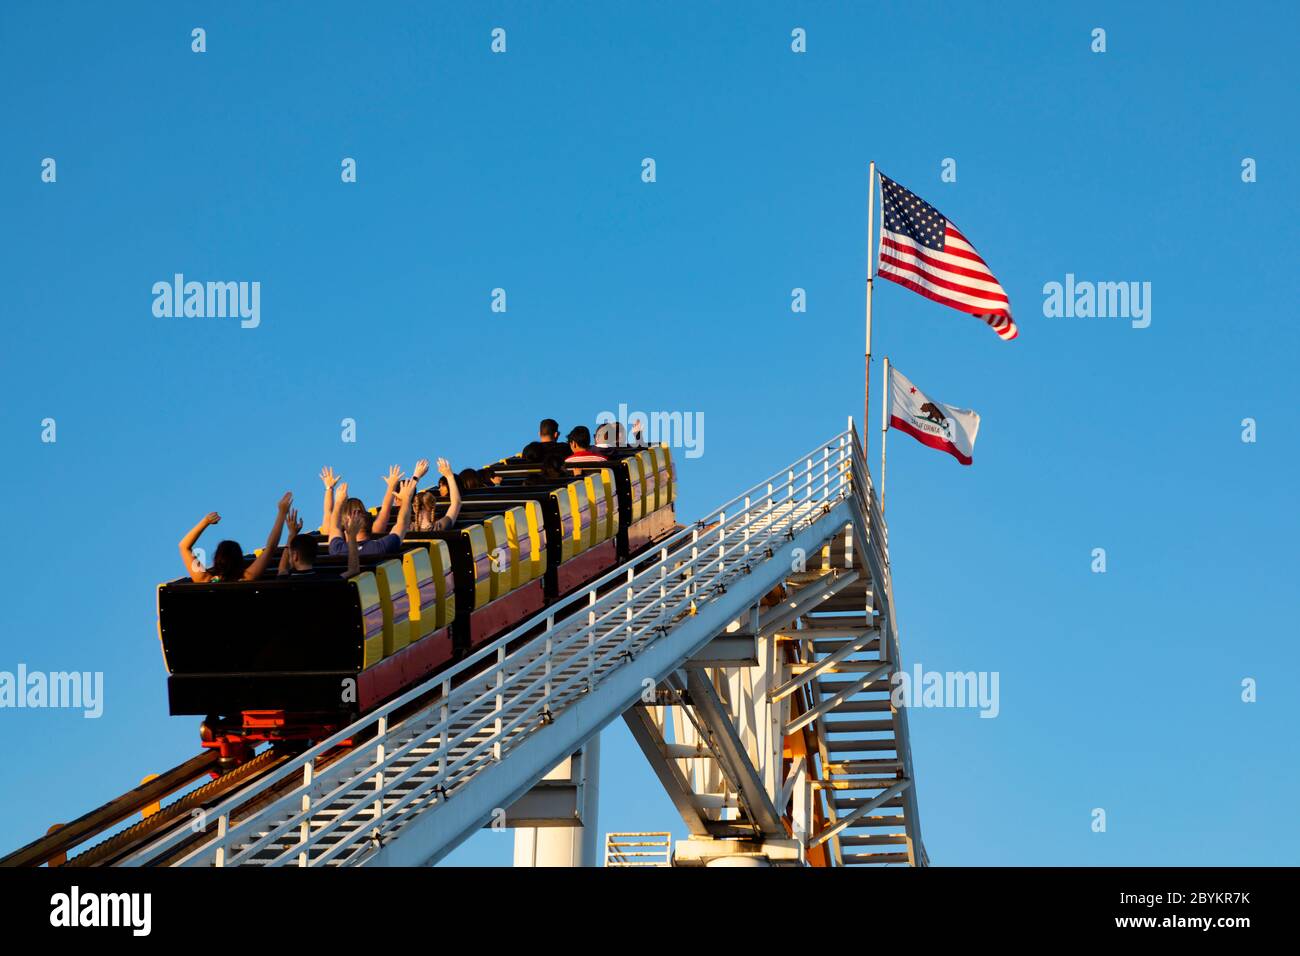 Die Achterbahn auf dem Pier, Santa Monica, Kalifornien, Vereinigte Staaten von Amerika. Oktober 2019 Stockfoto